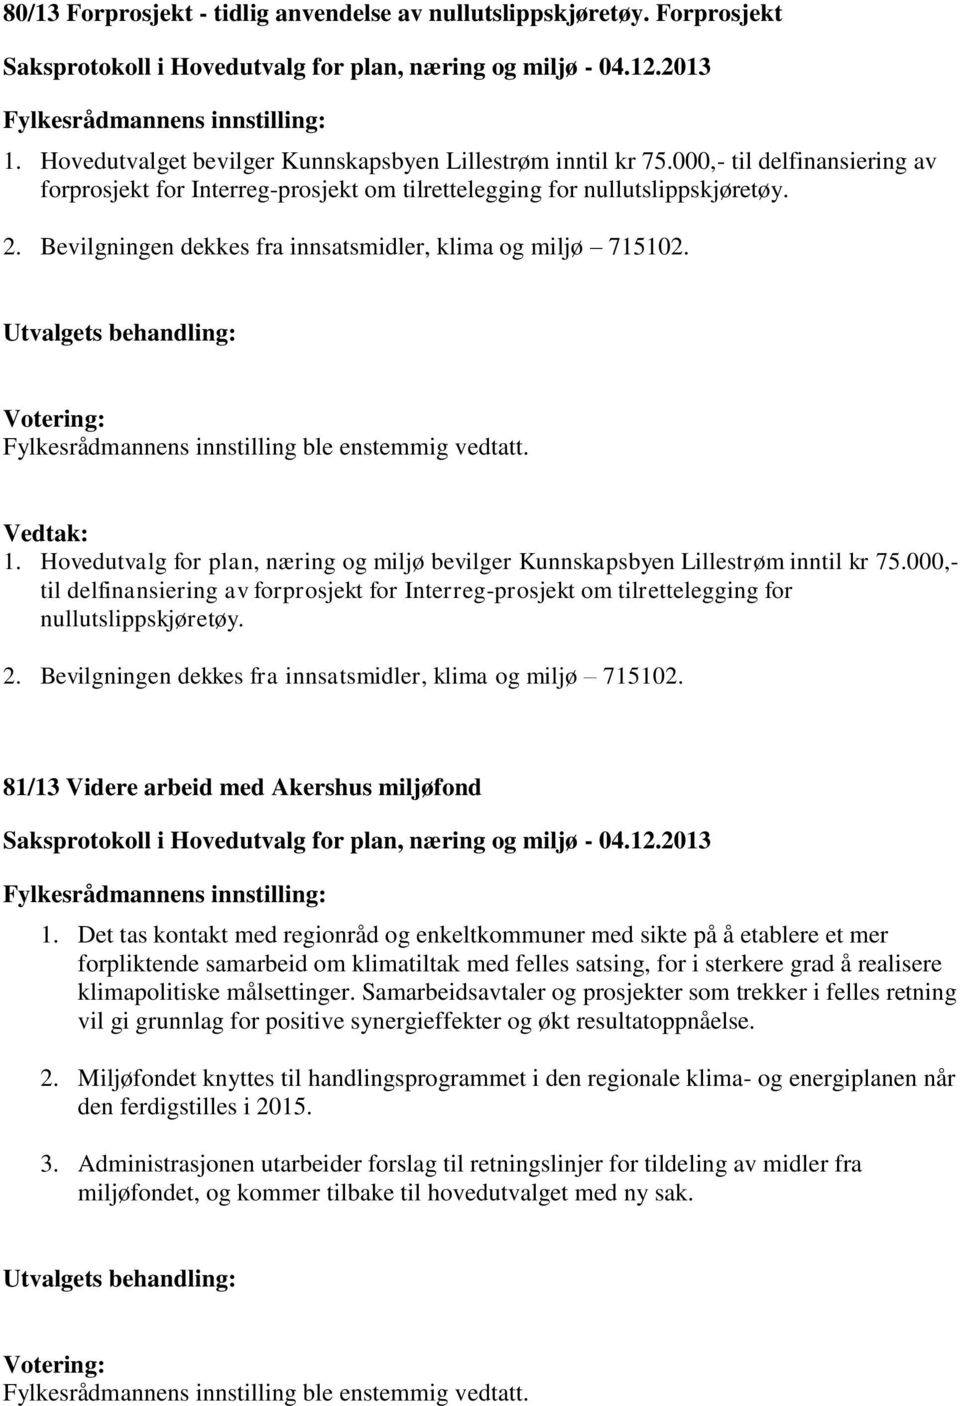 Hovedutvalg for plan, næring og miljø bevilger Kunnskapsbyen Lillestrøm inntil kr 75.000,- til delfinansiering av forprosjekt for Interreg-prosjekt om tilrettelegging for nullutslippskjøretøy. 2.